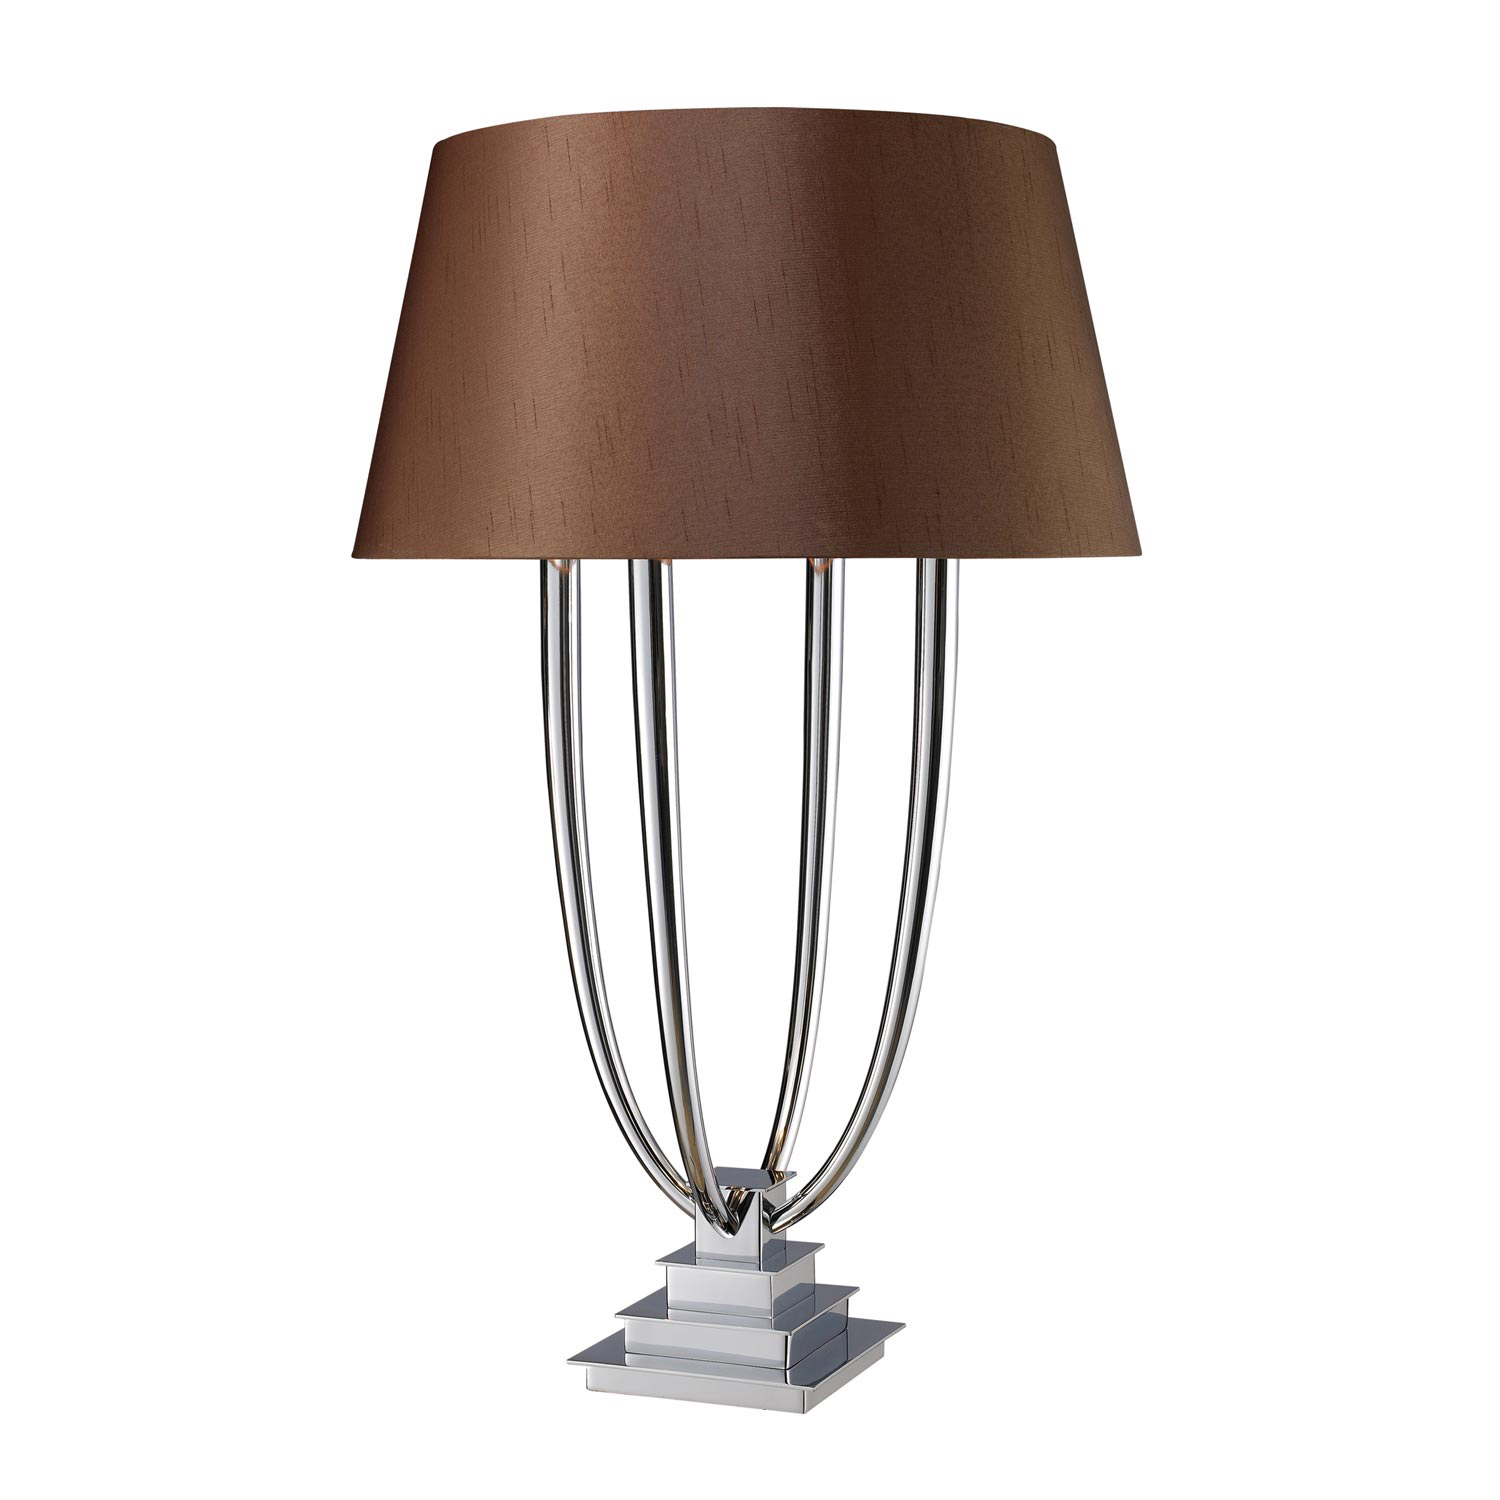 Elk Lighting D1804 Harris Table Lamp - Chrome